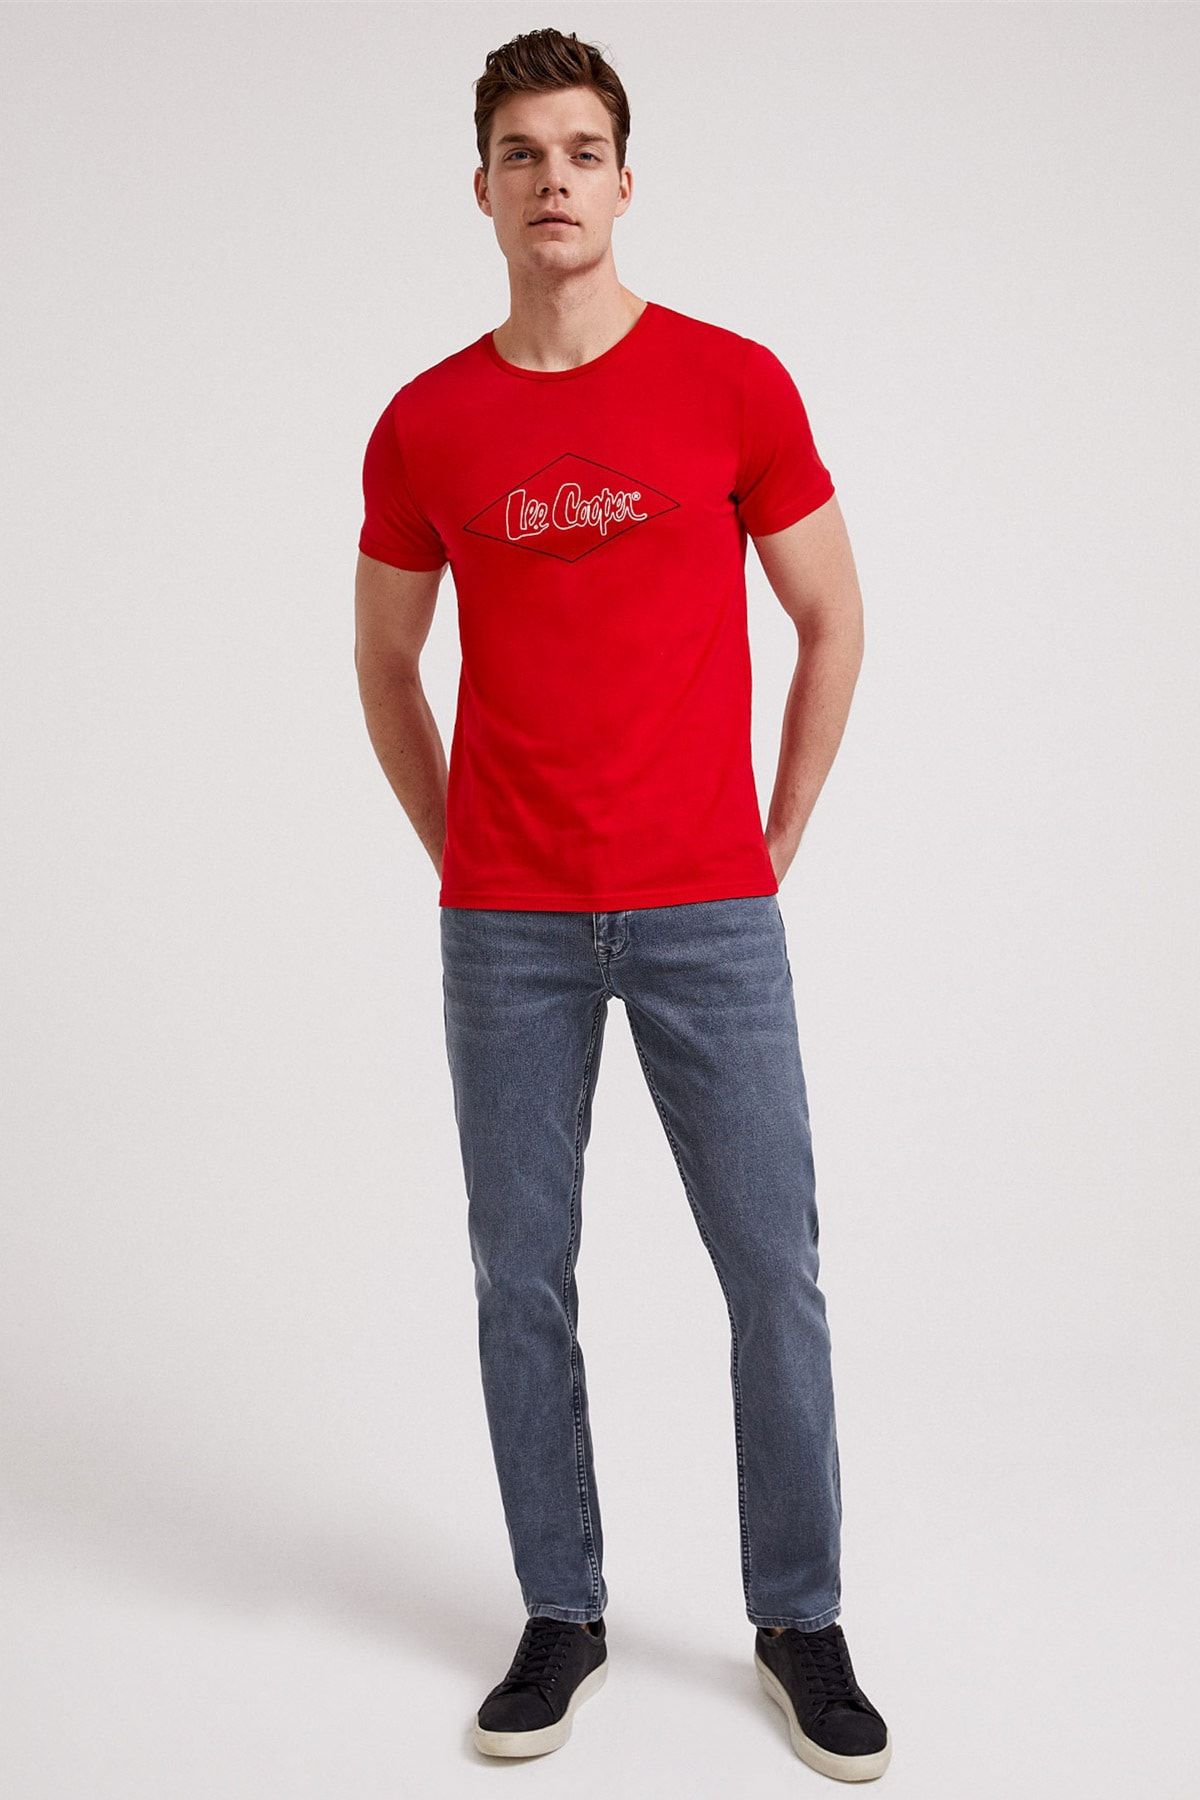 Lee Cooper Erkek Newlogo O Yaka T-Shirt Kırmızı 202 LCM 242012